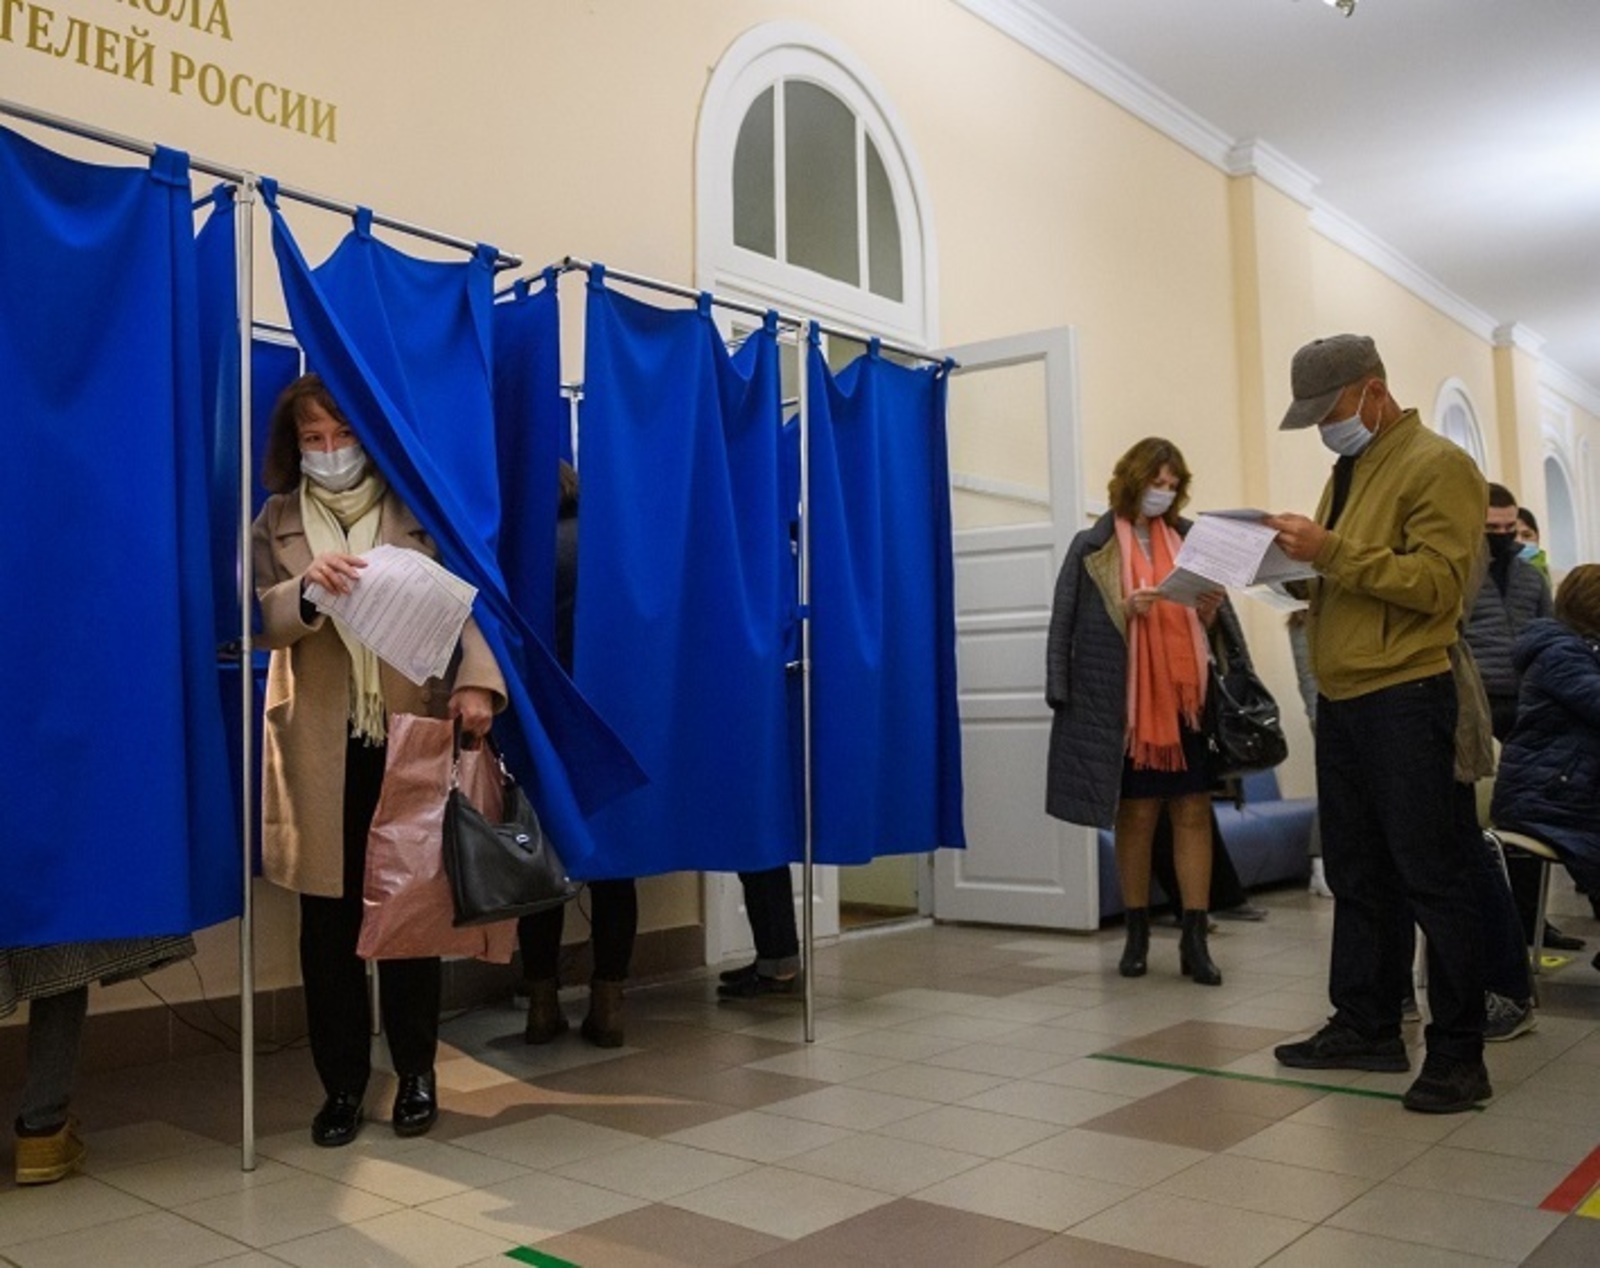 Эксперты подчеркнули прозрачность и отсутствие конфликтов на прошедших выборах в Госдуму